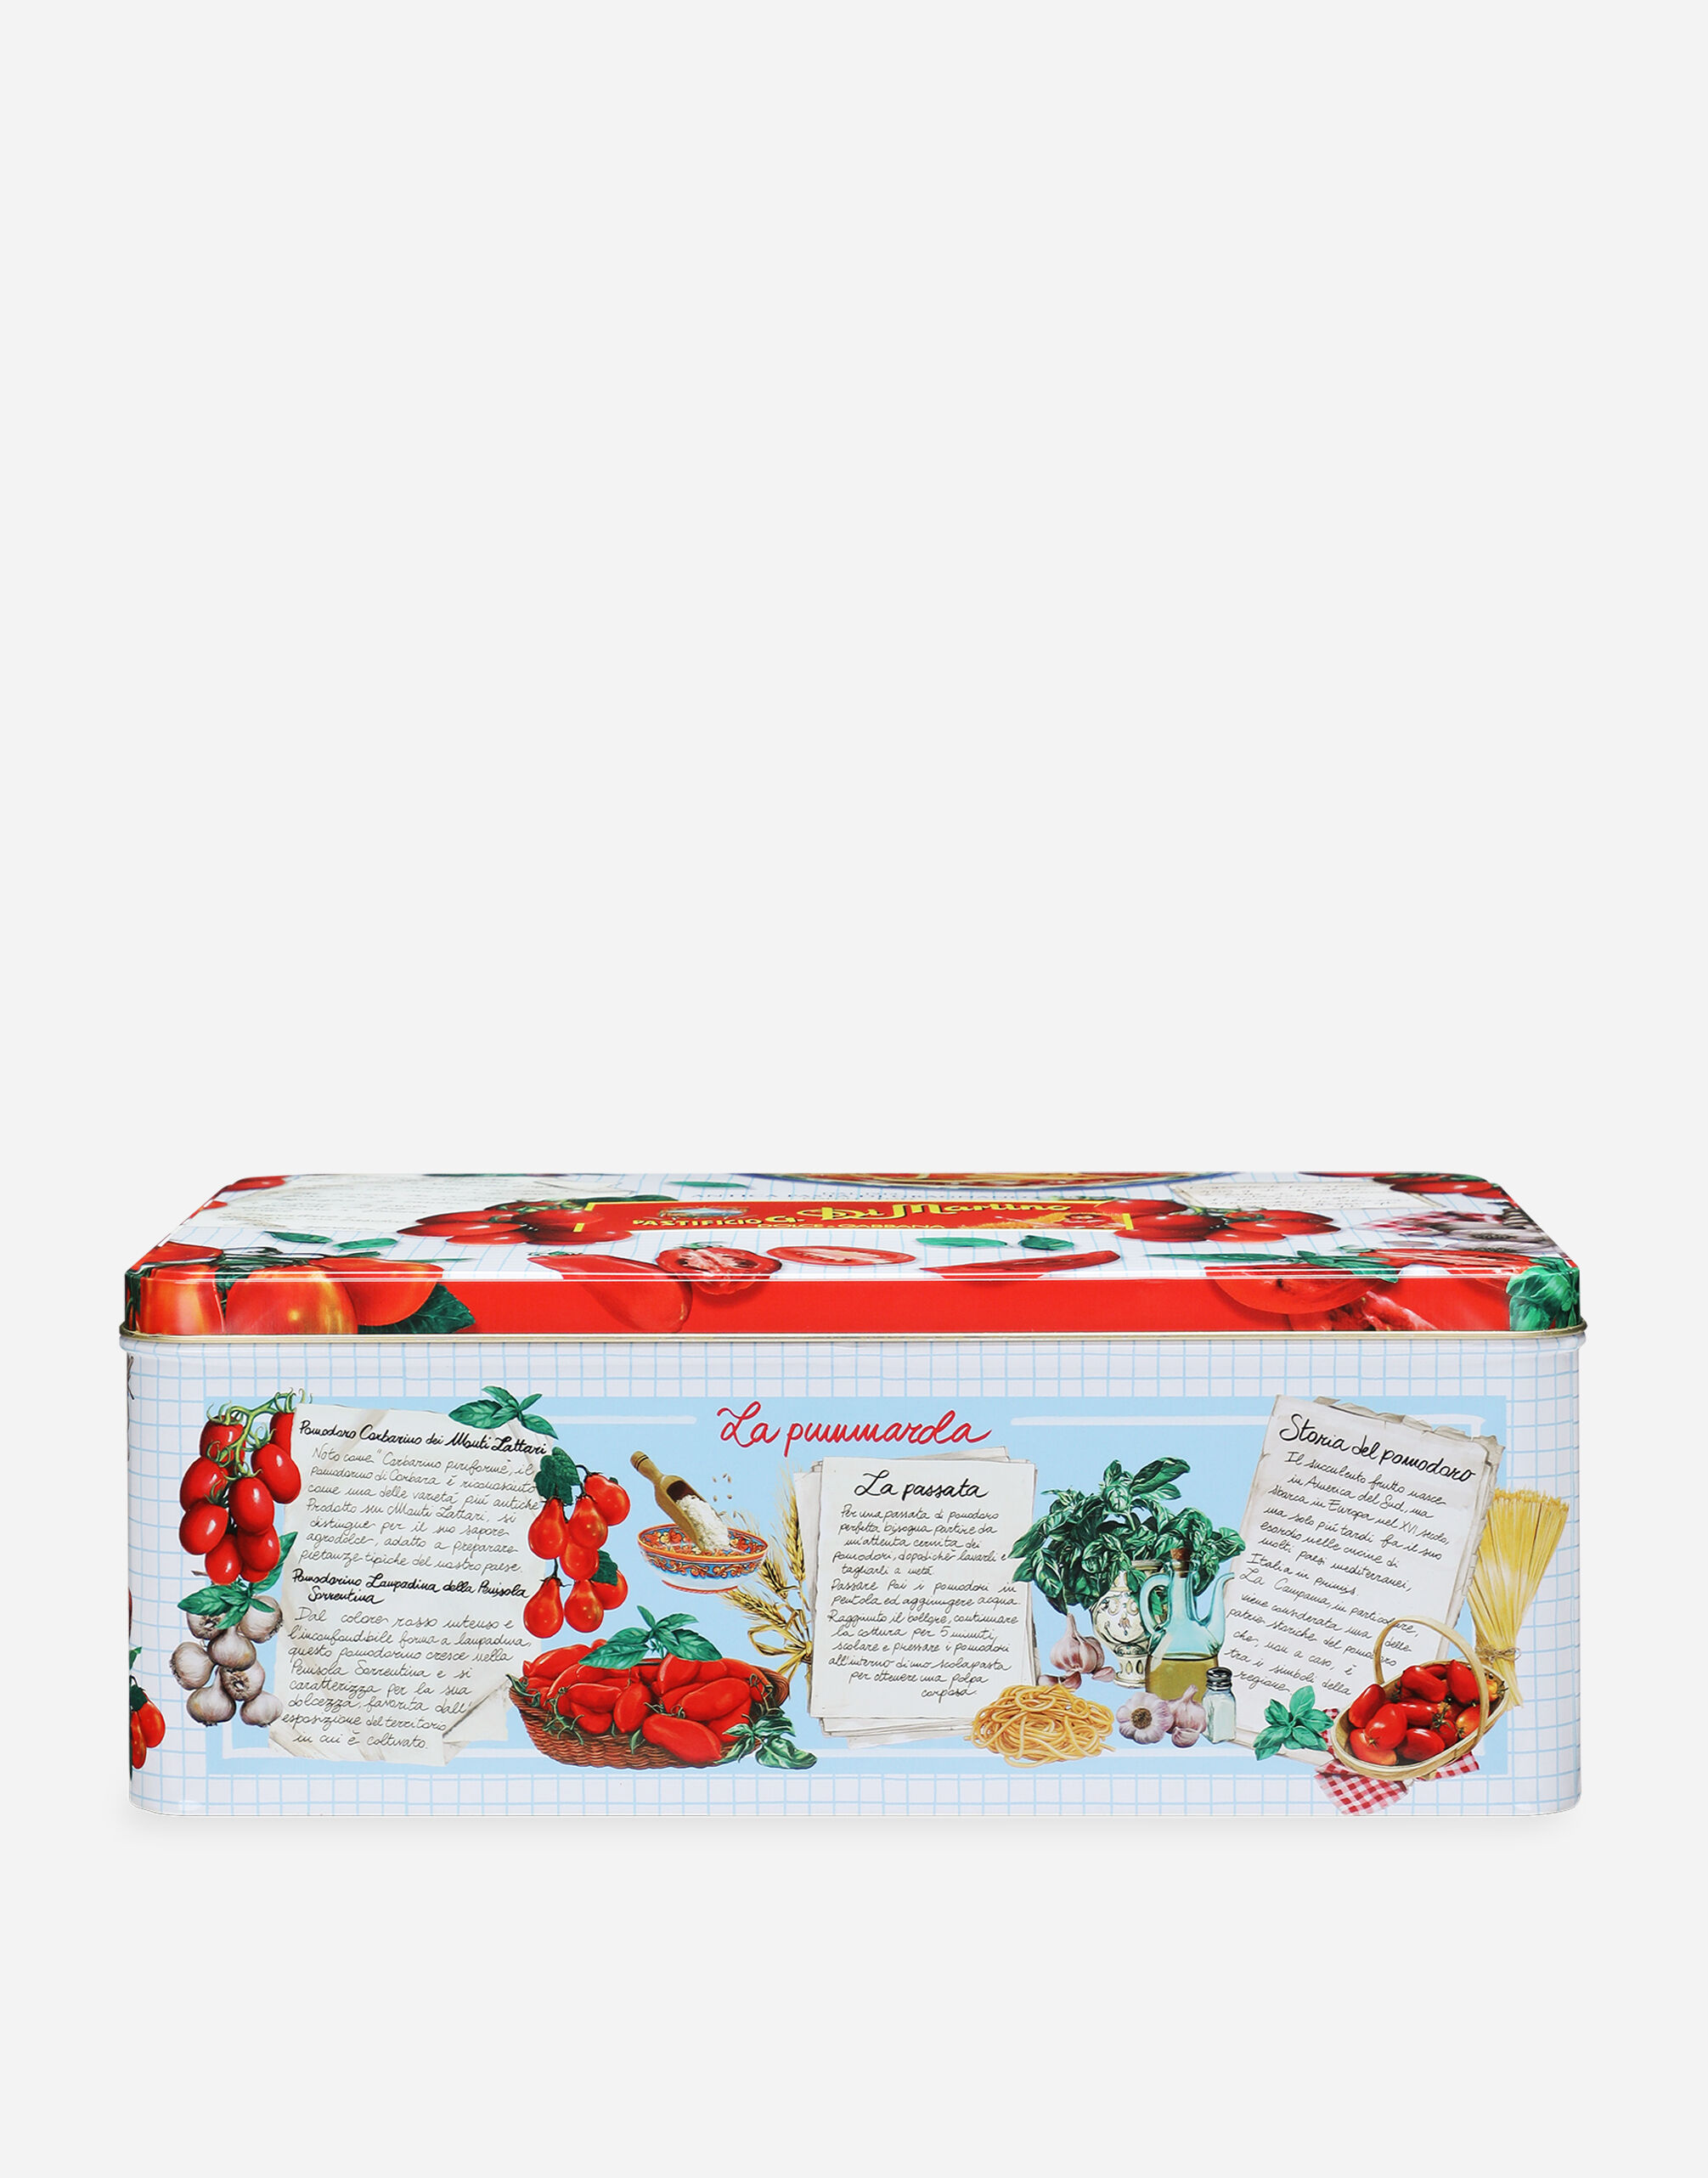 Dolce & Gabbana La Pummarola - Geschenkbox mit 5 Packungen Pasta di Gragnano IGP, 2 Dosen Corbarino-Tomaten und Dolce&Gabbana-Schürze Mehrfarbig PS7010PSSET